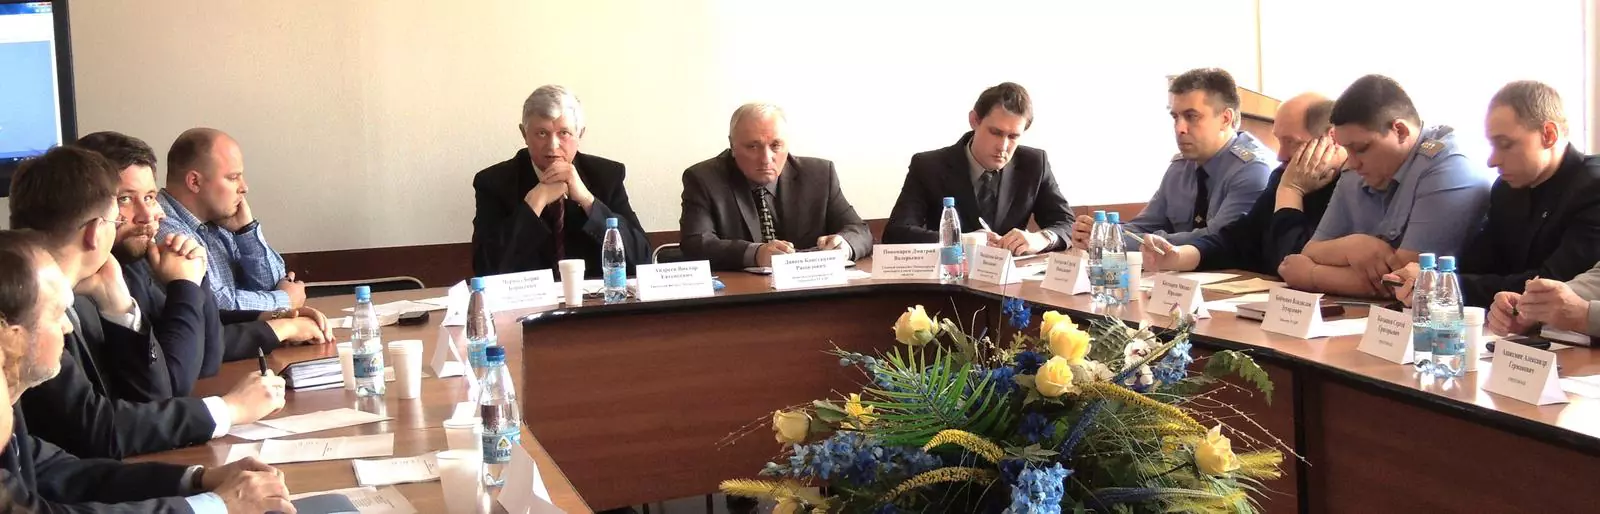 19 марта 2014 в г. Калининград проведен семинар на тему: «Соблюдение требований системы тахографического контроля РФ»